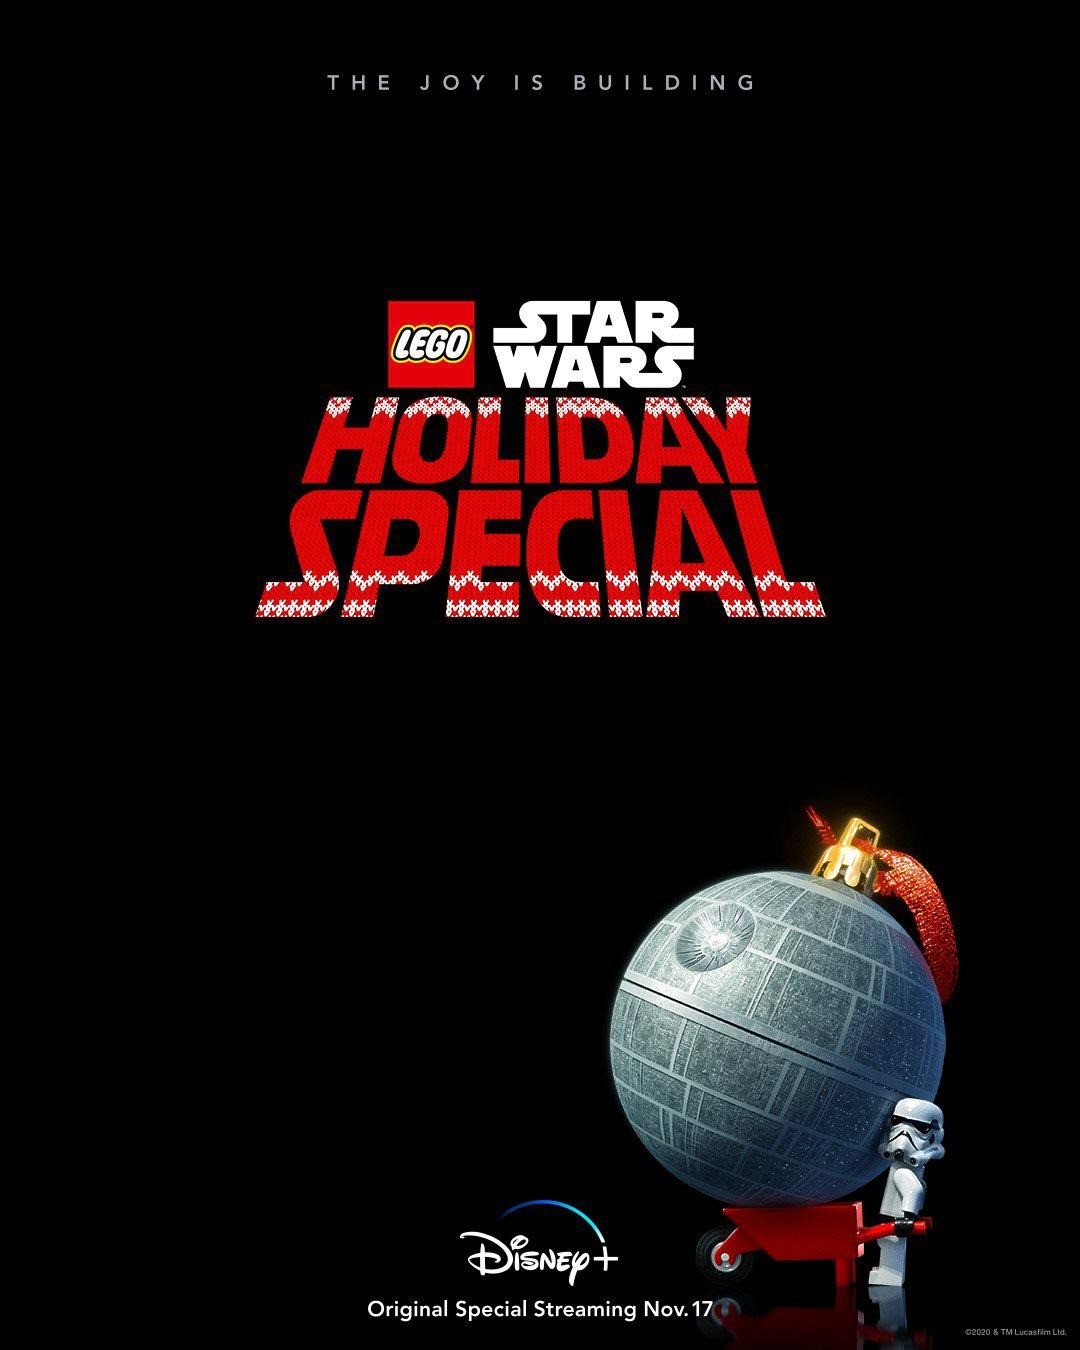 ЛЕГО Звездные войны: Праздничный спецвыпуск / The Lego Star Wars Holiday Special (2020) отзывы. Рецензии. Новости кино. Актеры фильма ЛЕГО Звездные войны: Праздничный спецвыпуск. Отзывы о фильме ЛЕГО Звездные войны: Праздничный спецвыпуск